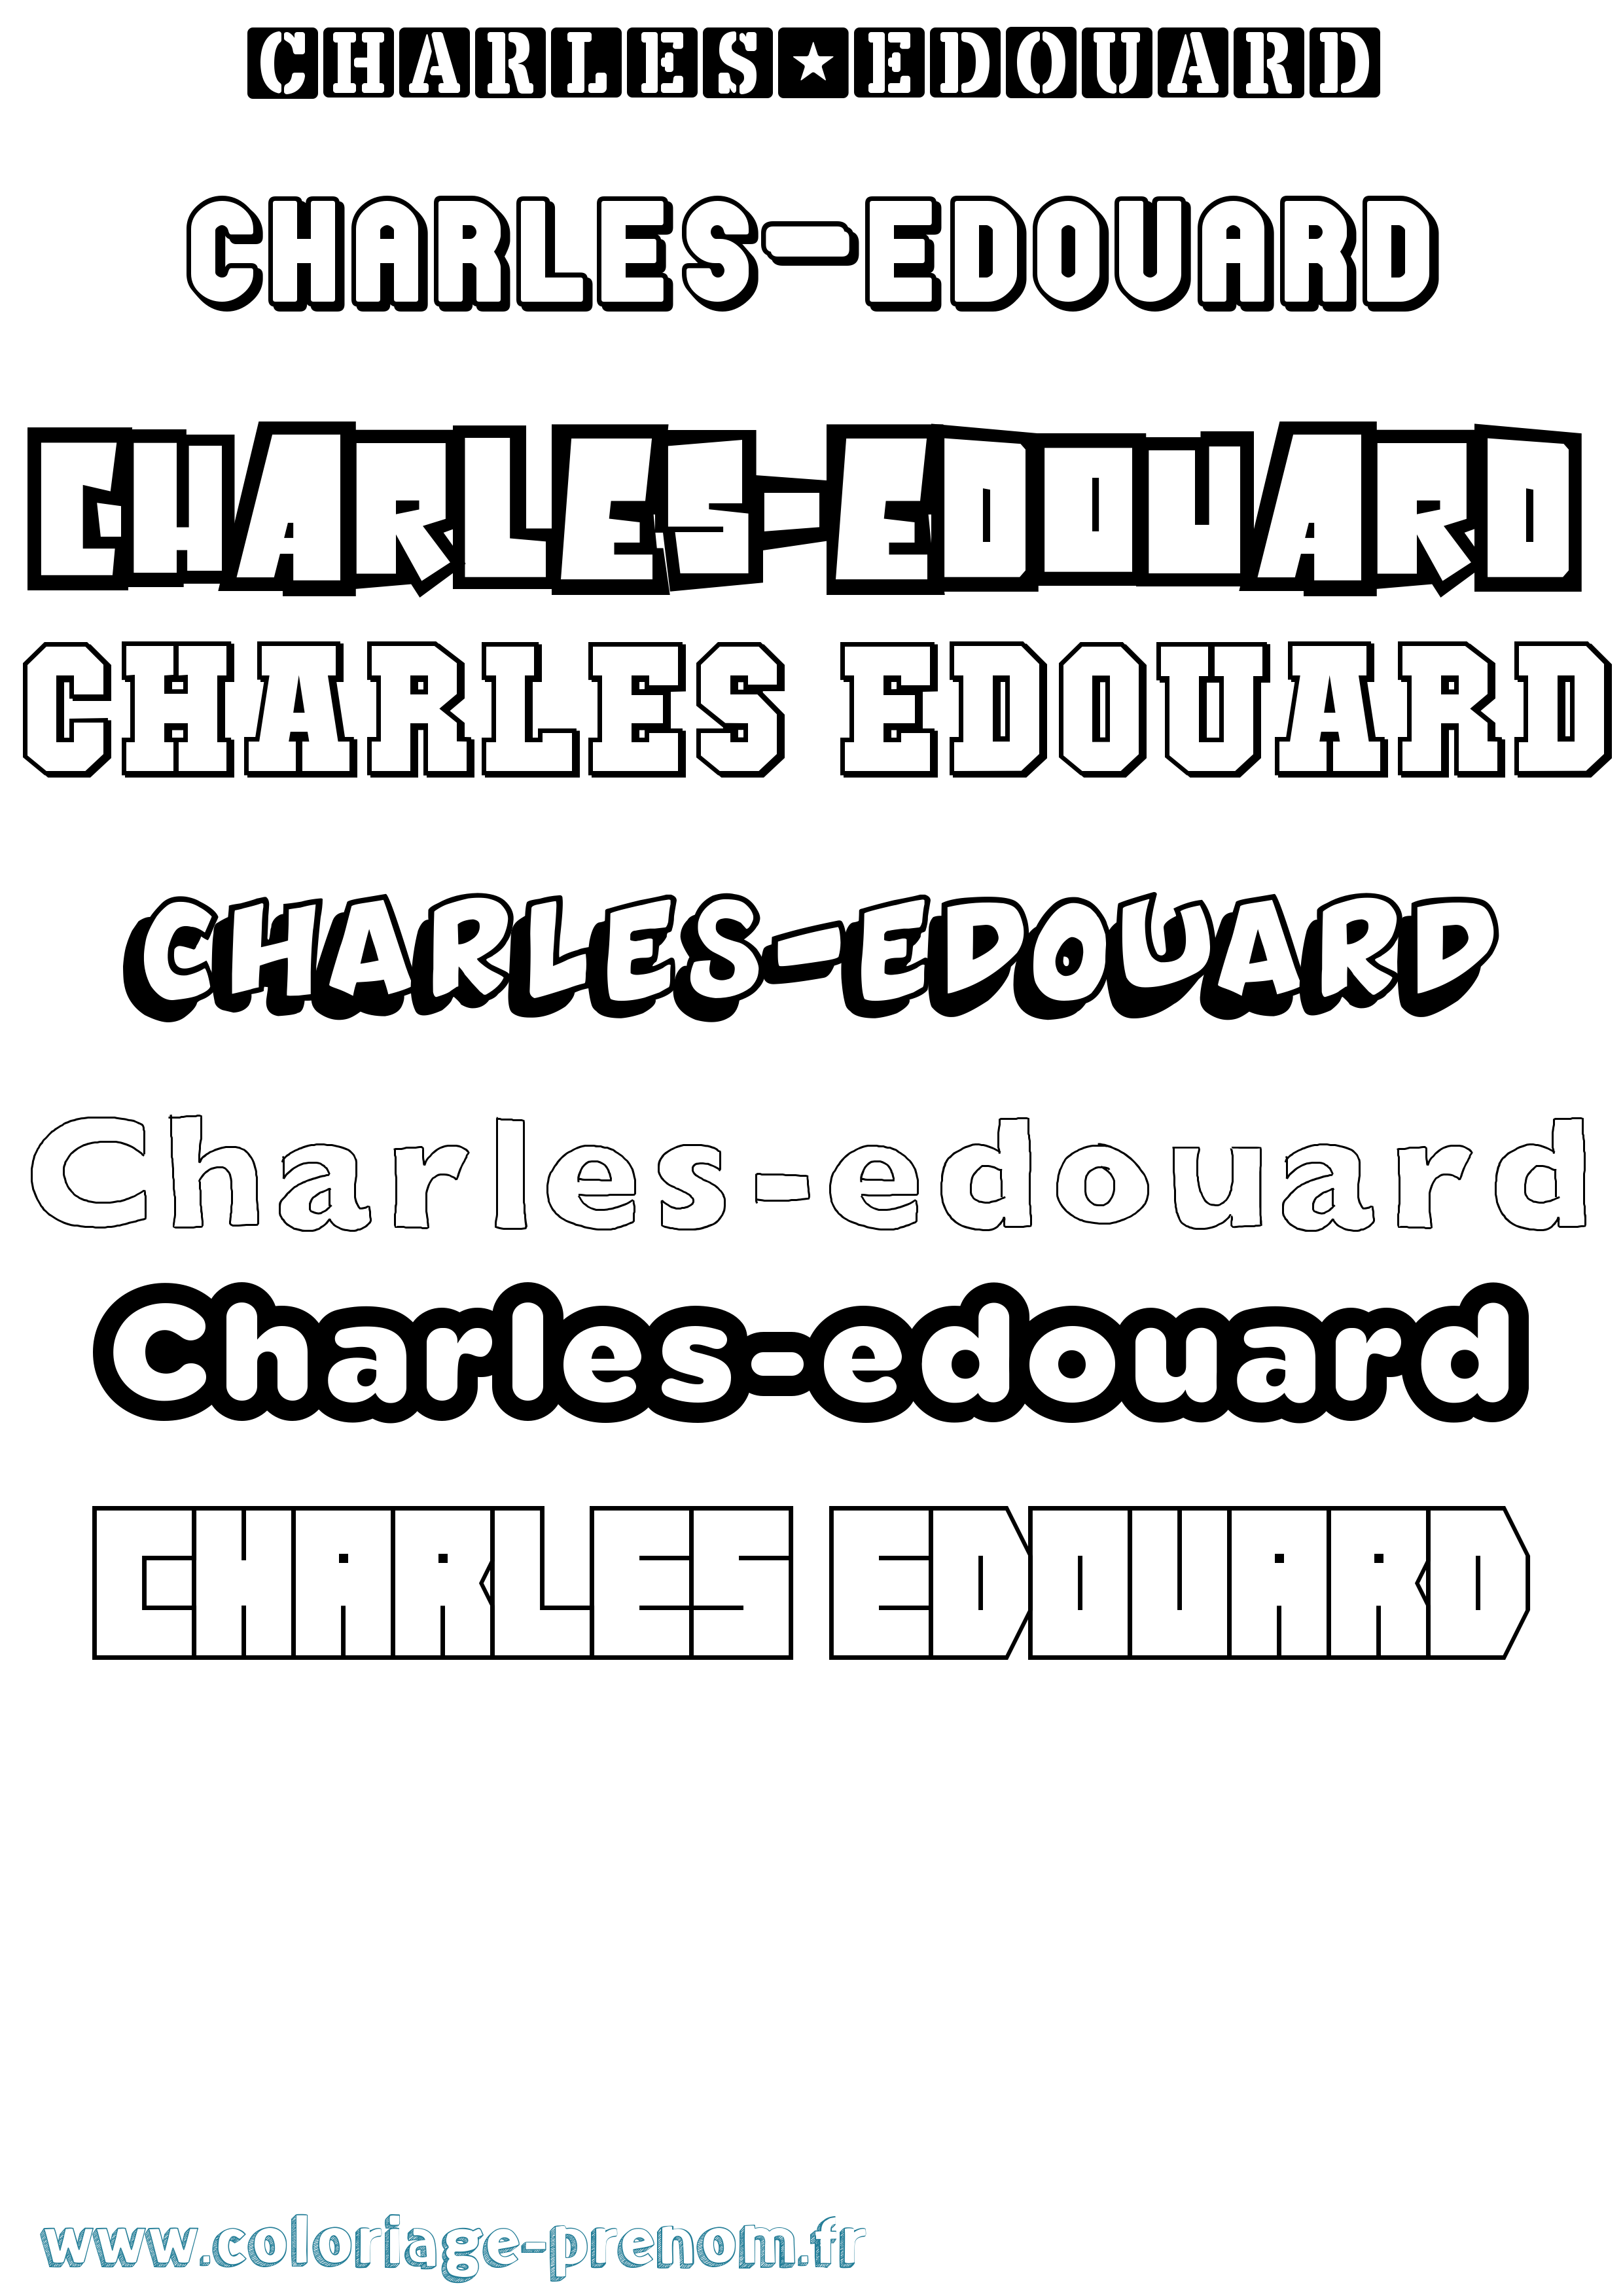 Coloriage prénom Charles-Edouard Simple